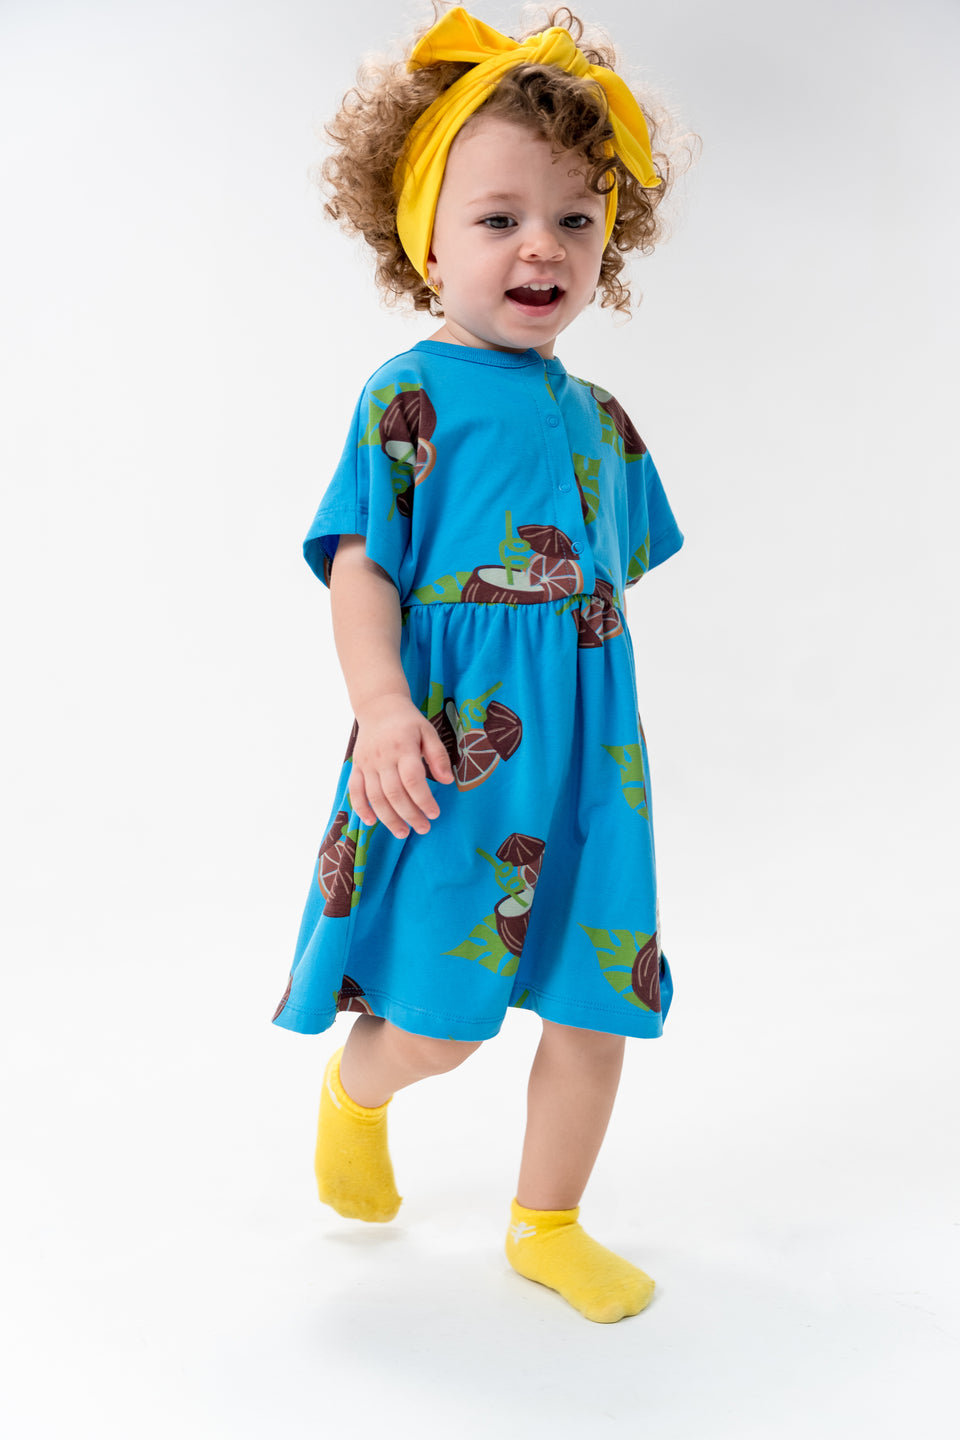 kids-atelier-moi-noi-kid-baby-girl-blue-coconut-print-summer-dress-mn8018-blue